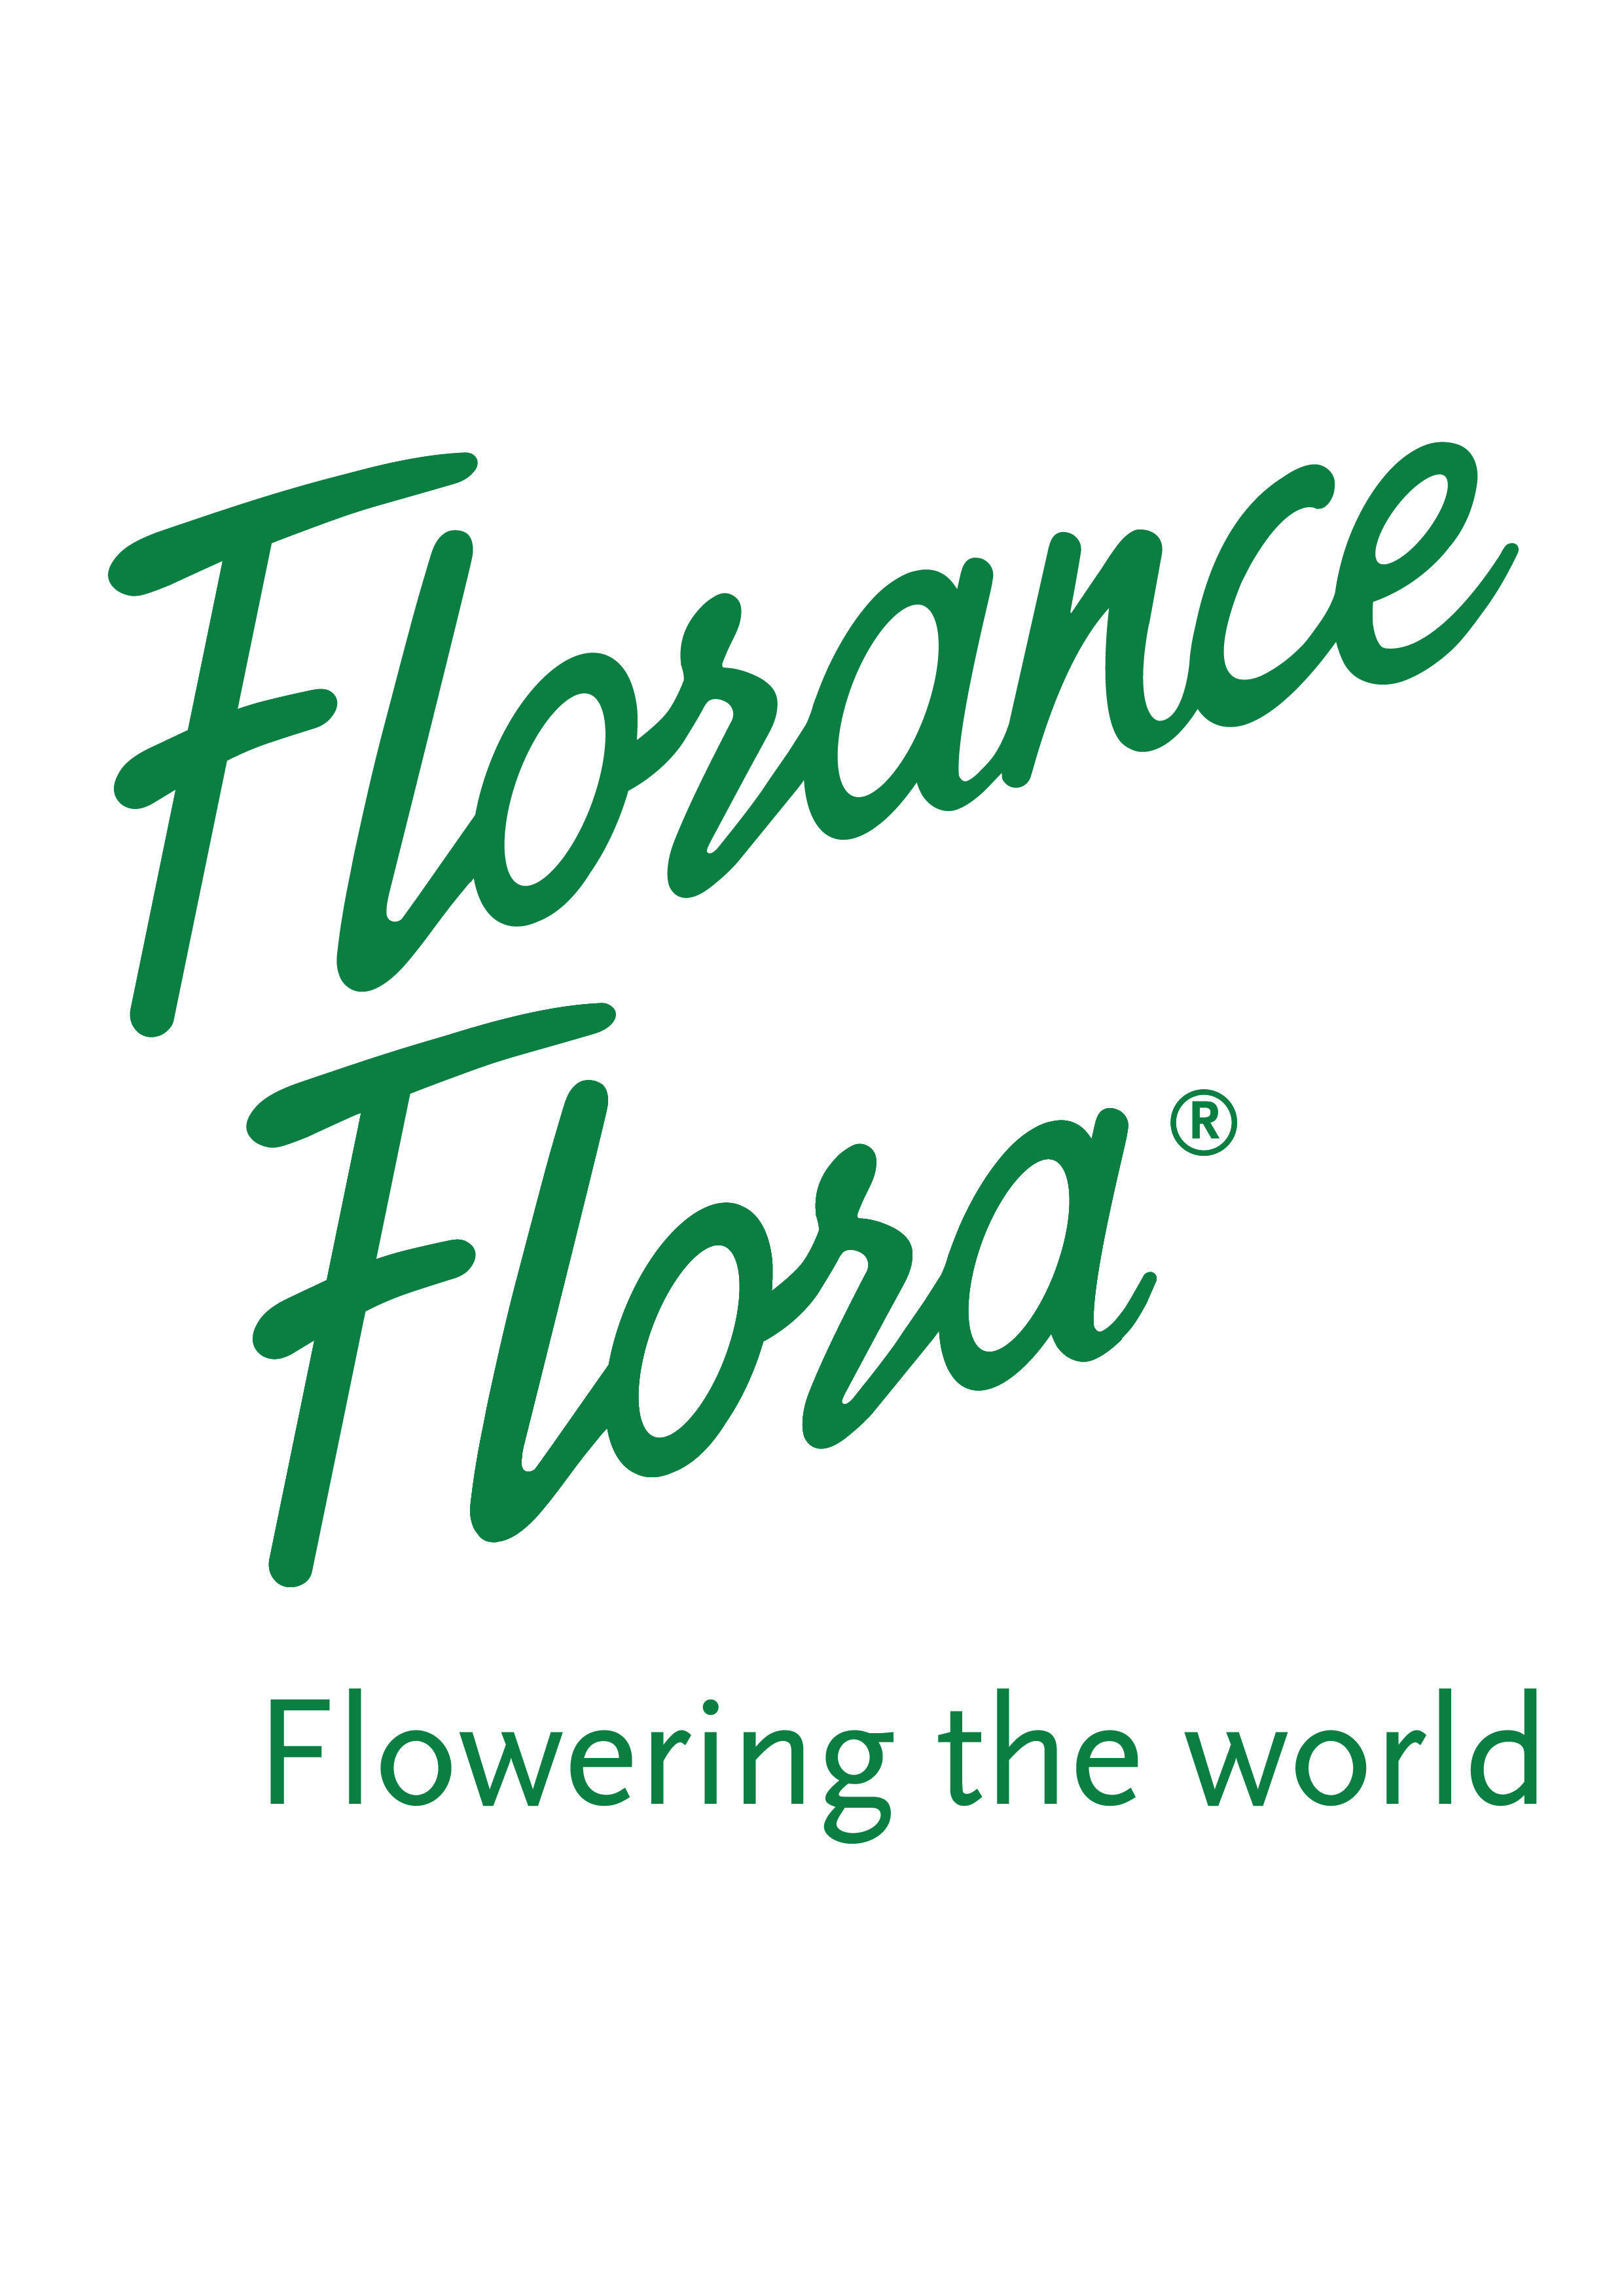 Florance Flora